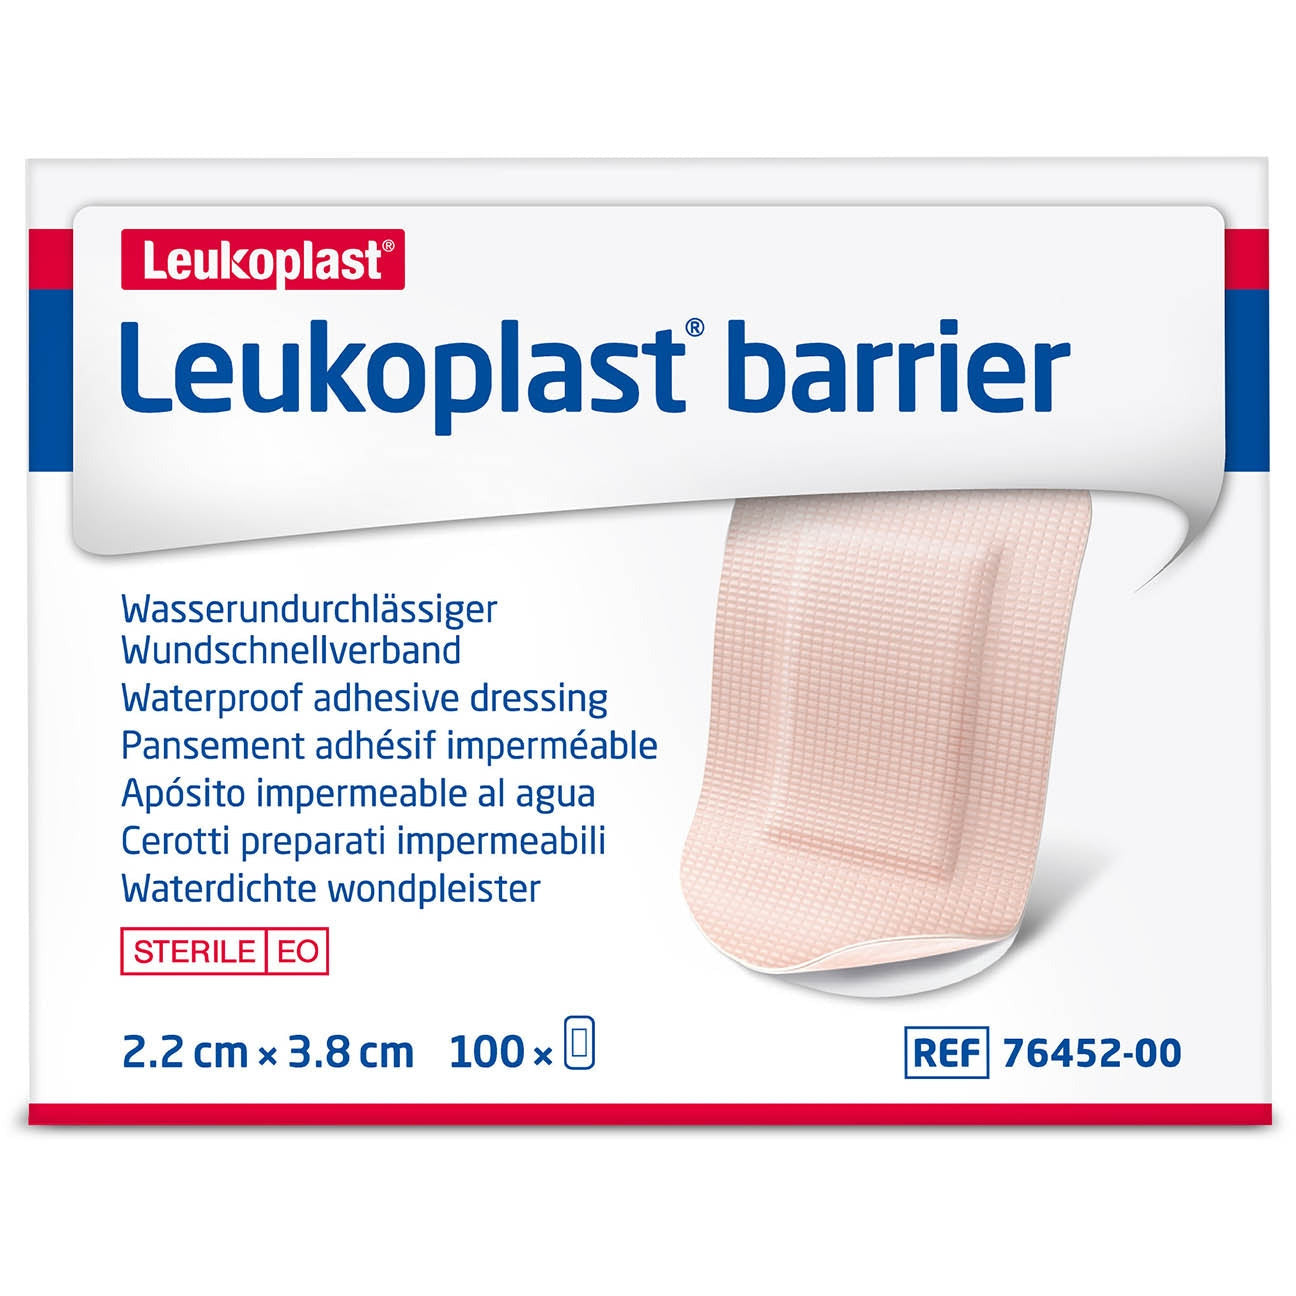 Leukoplast barrier 3.8cm x 2.2cm x 100